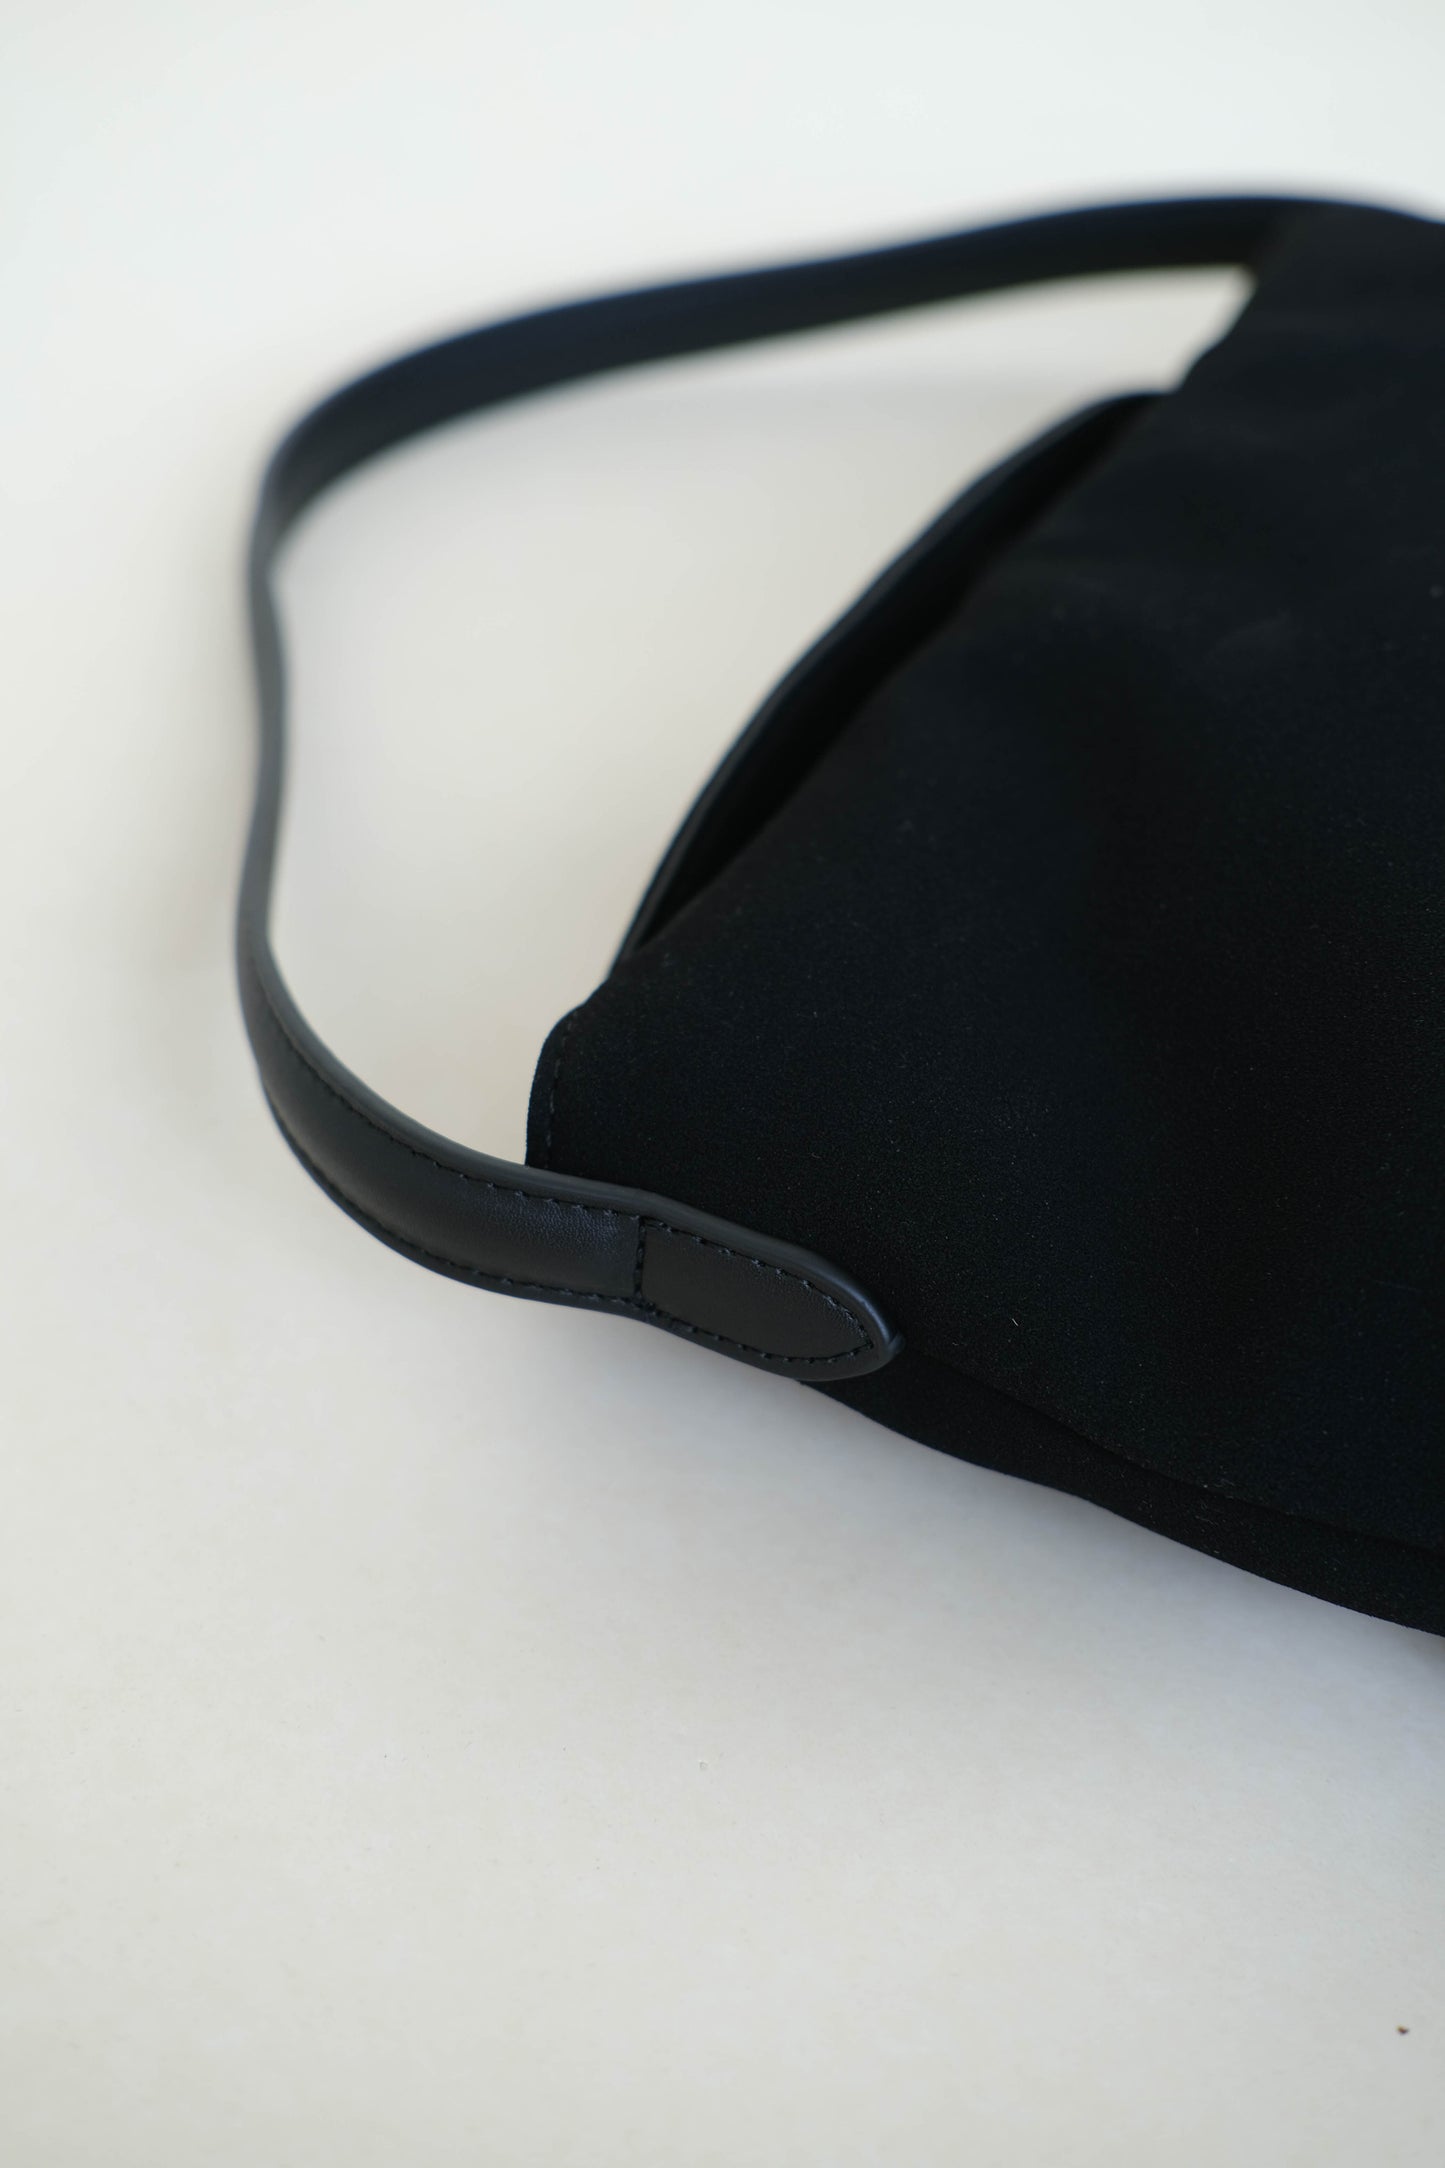 Matte finish single-strap shoulder bag in classic black